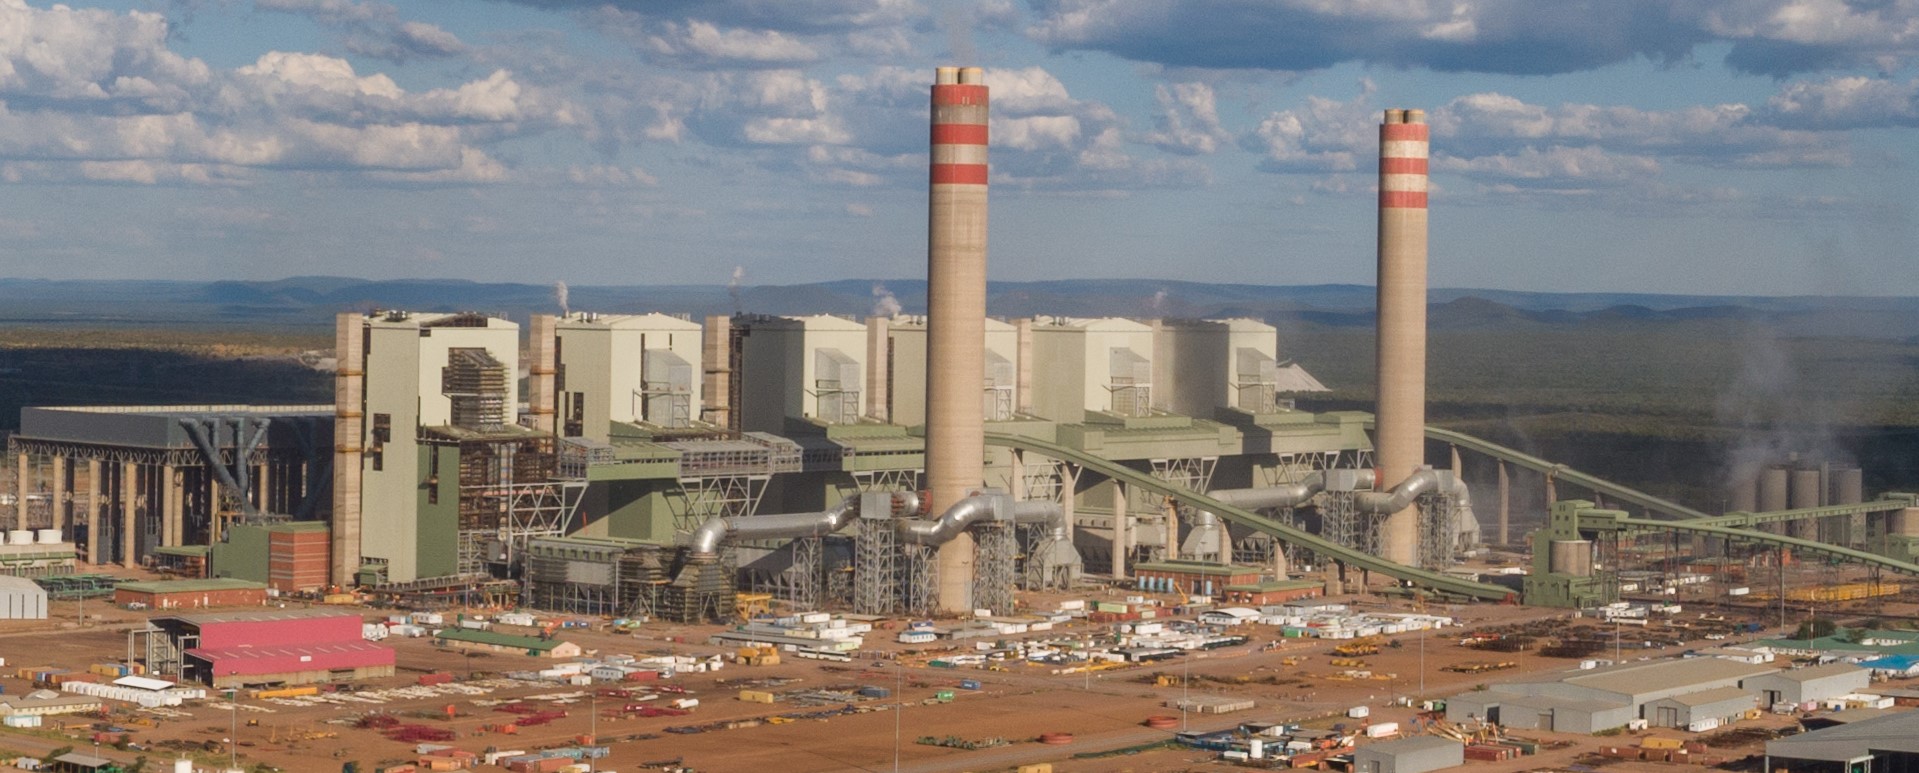 Photo of Medupi power station